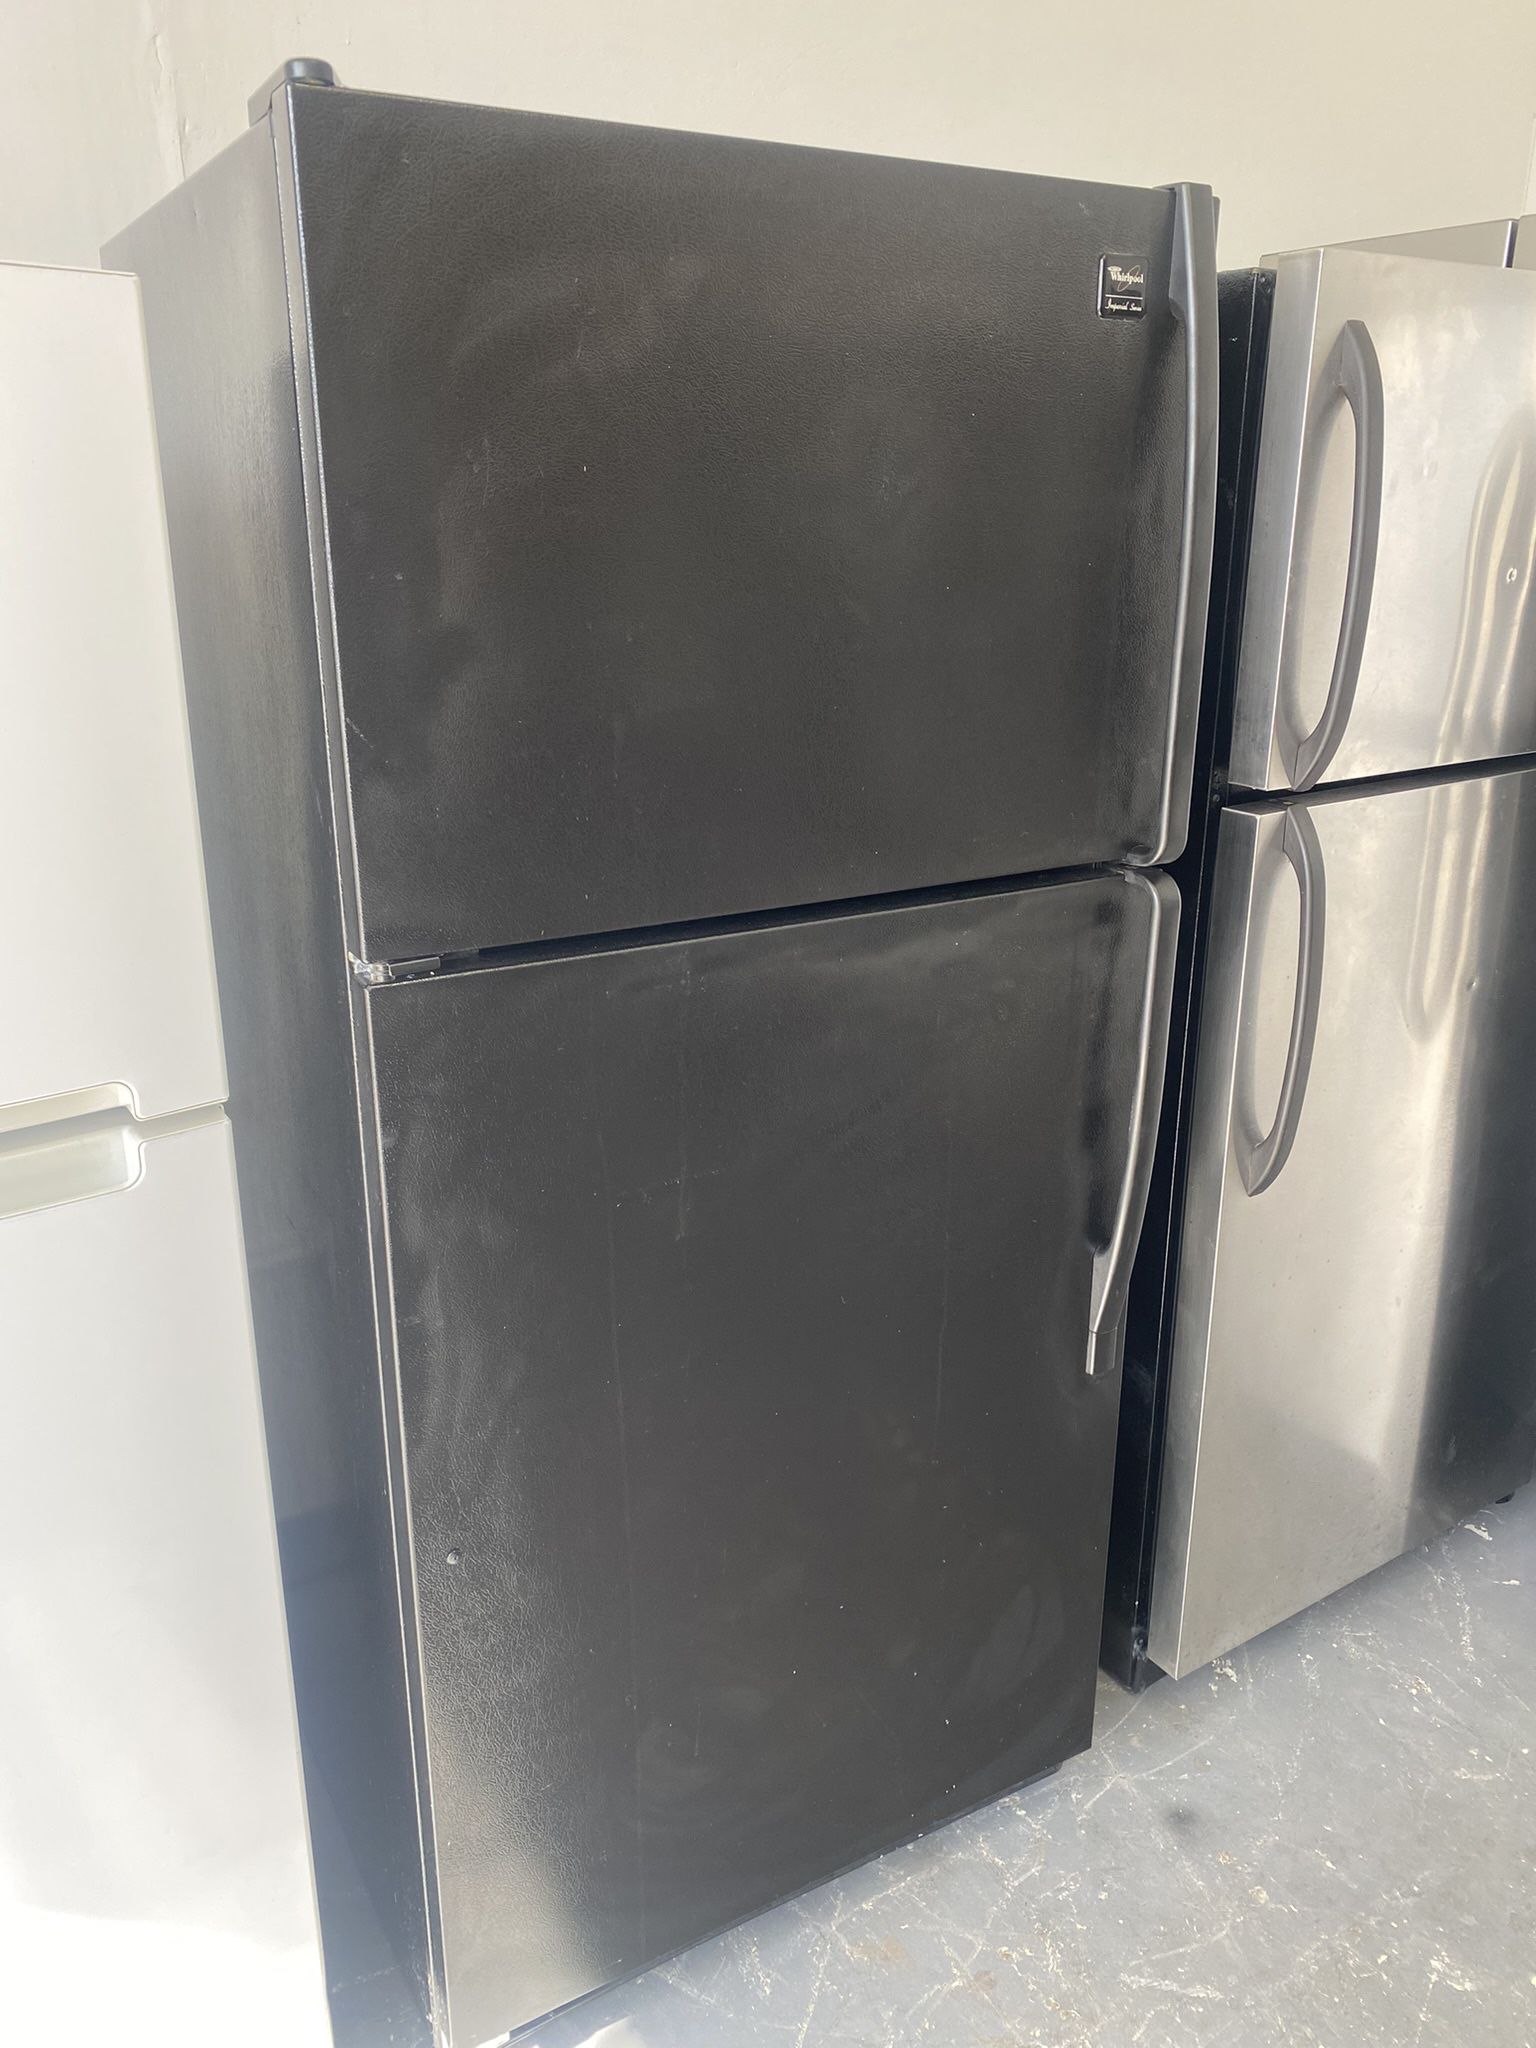 Refrigerator 32 “ Wides 